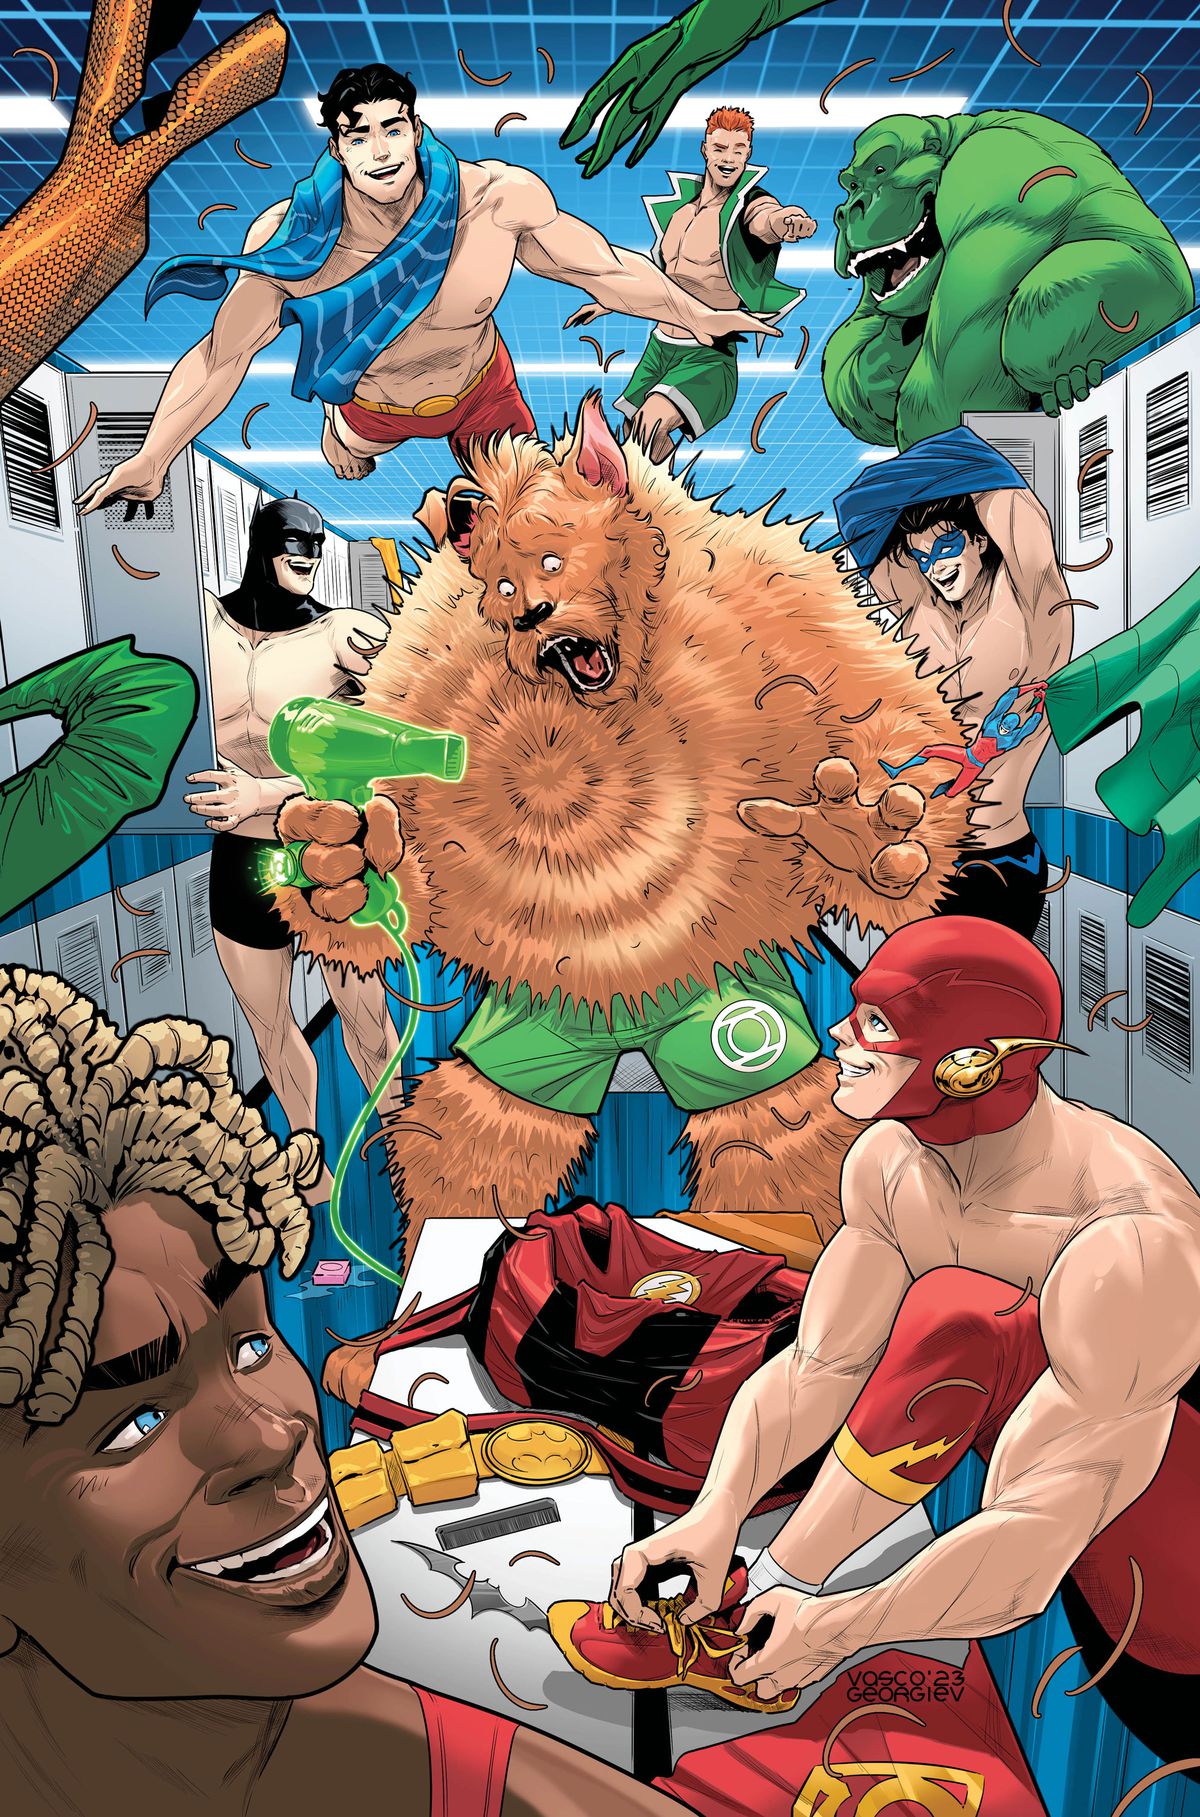 G'nort ser förvånad ut när han puffar ut sin päls med en hårtork i ett omklädningsrum fyllt av skrattande DC-superhjältar som sätter sig i sina simbyxor på omslaget till G'nort's Illustrated Swimsuit Edition (2023).